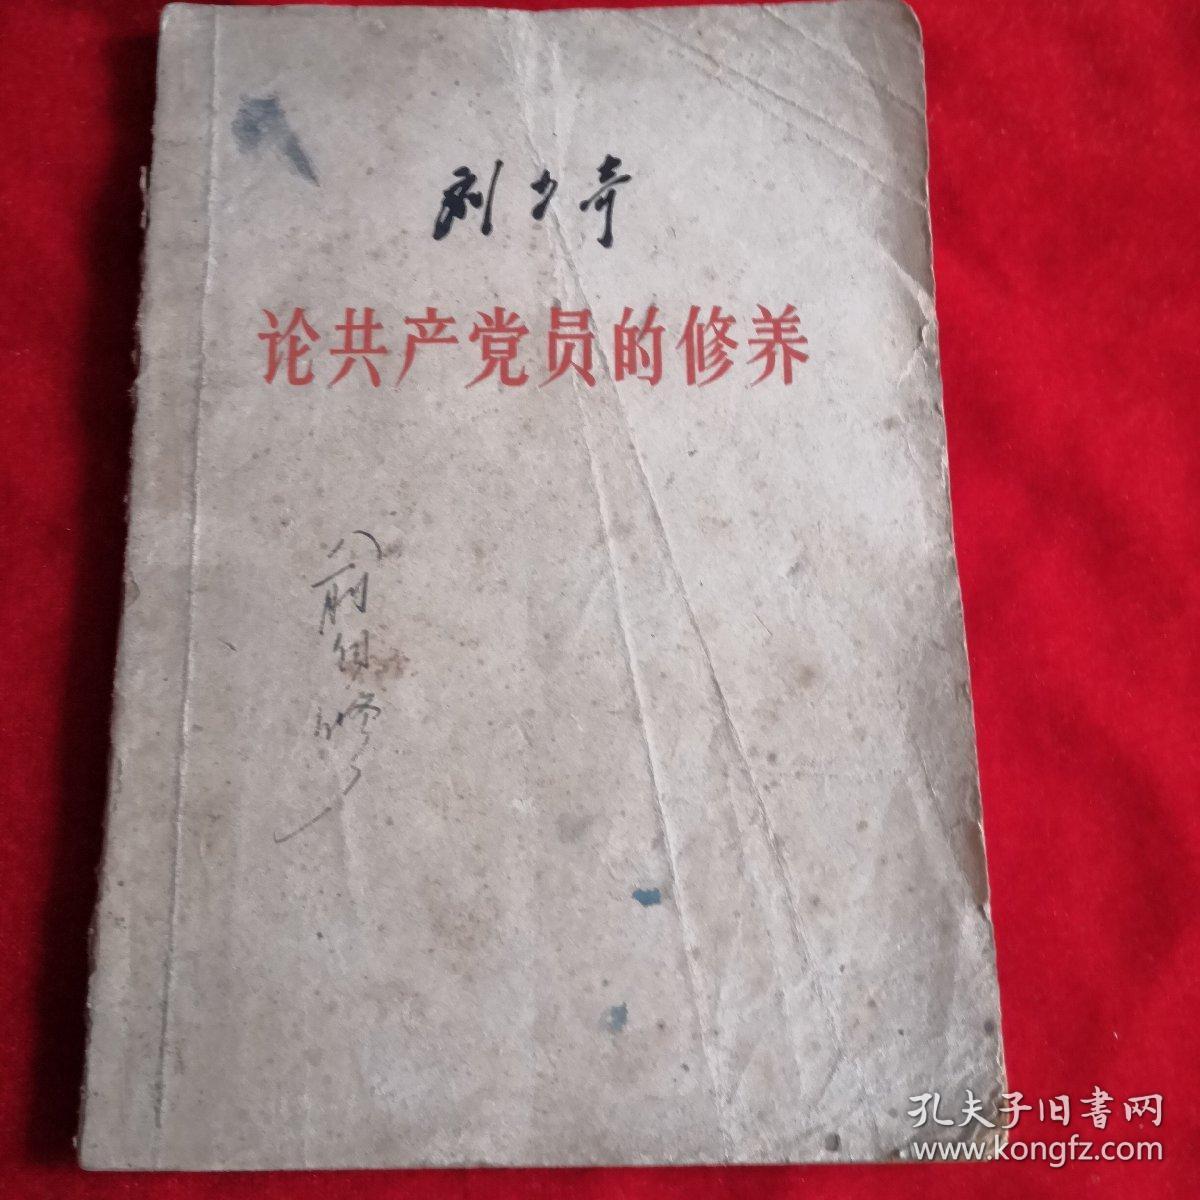 刘少论共产党员的修养 ——1949年版 有签名，如图所示